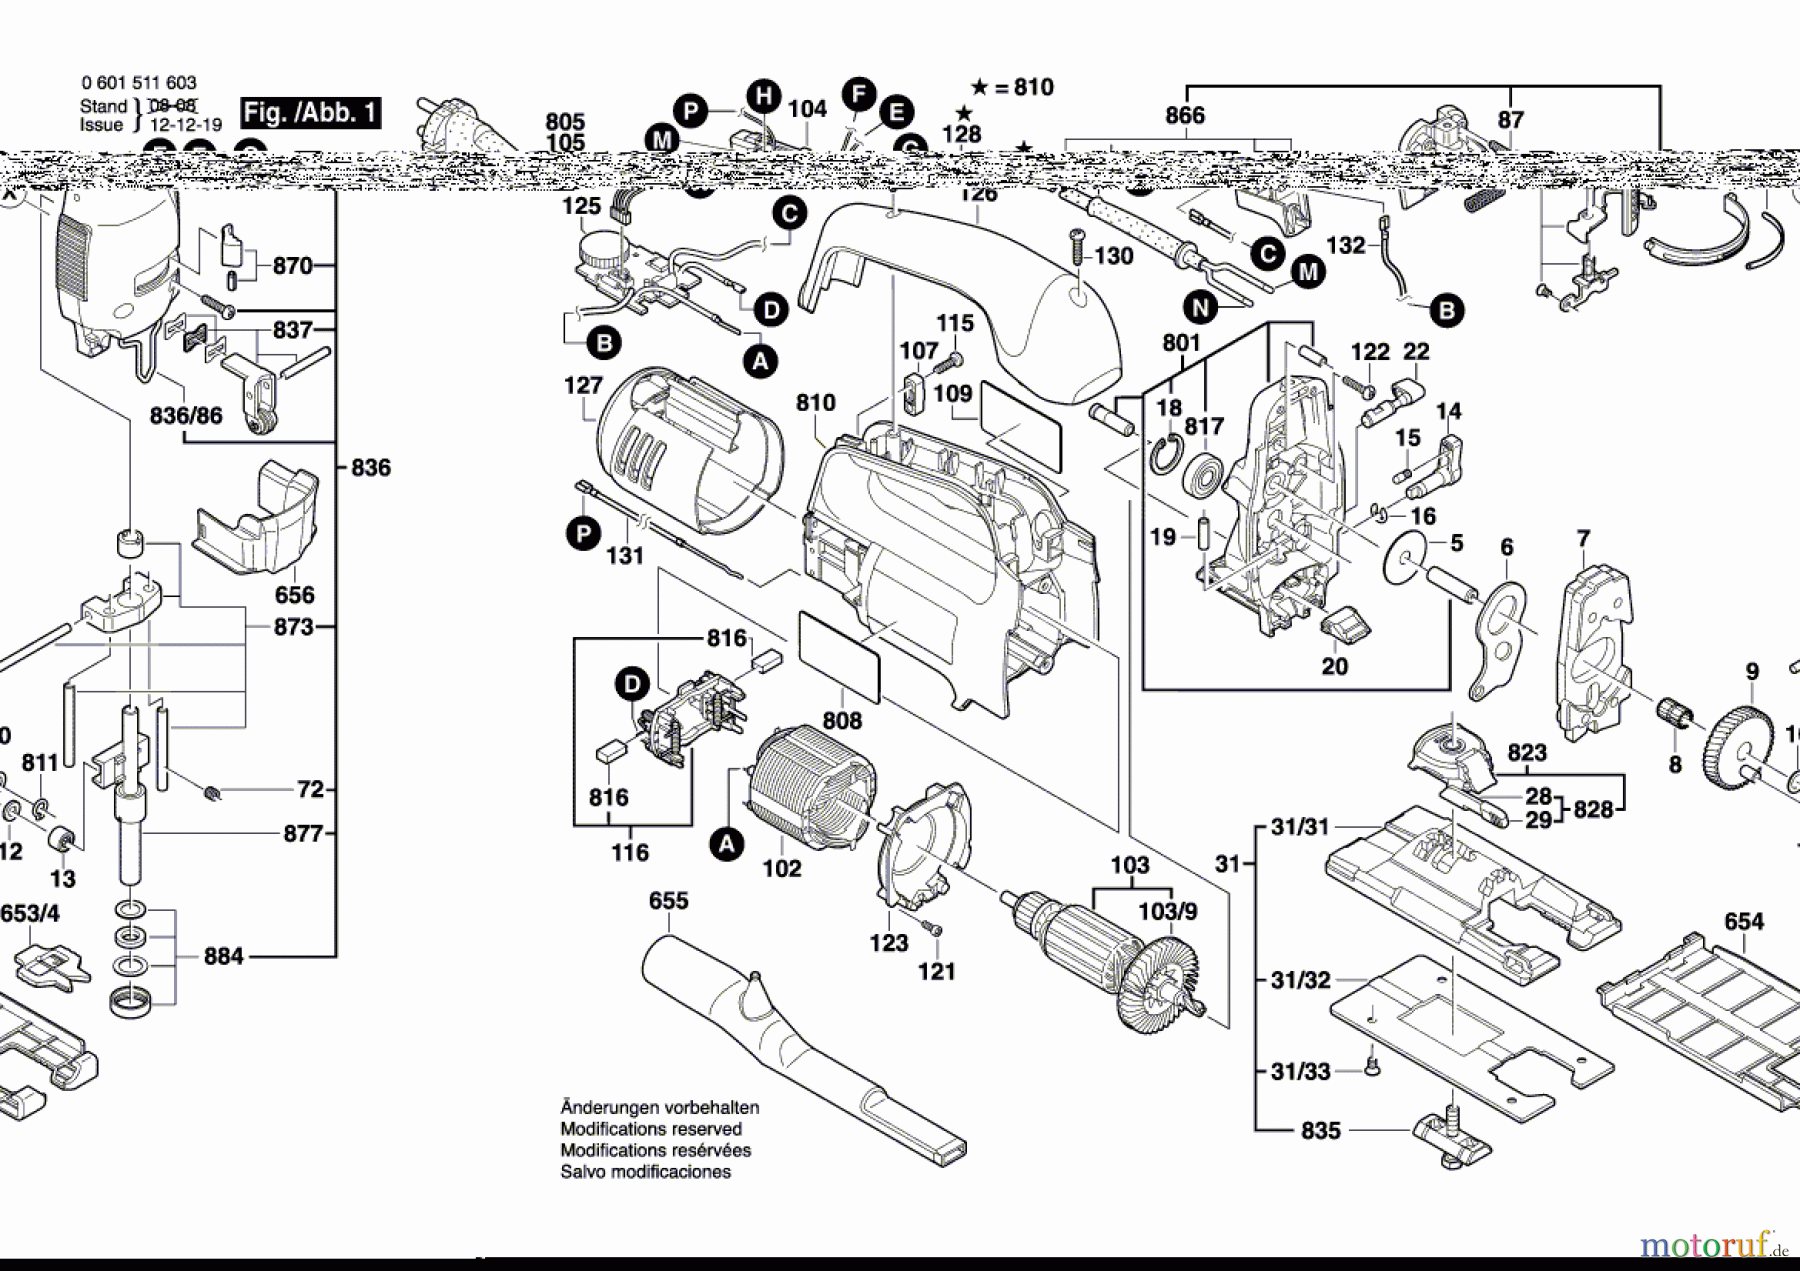  Bosch Werkzeug Stichsäge STP 120-B Seite 1